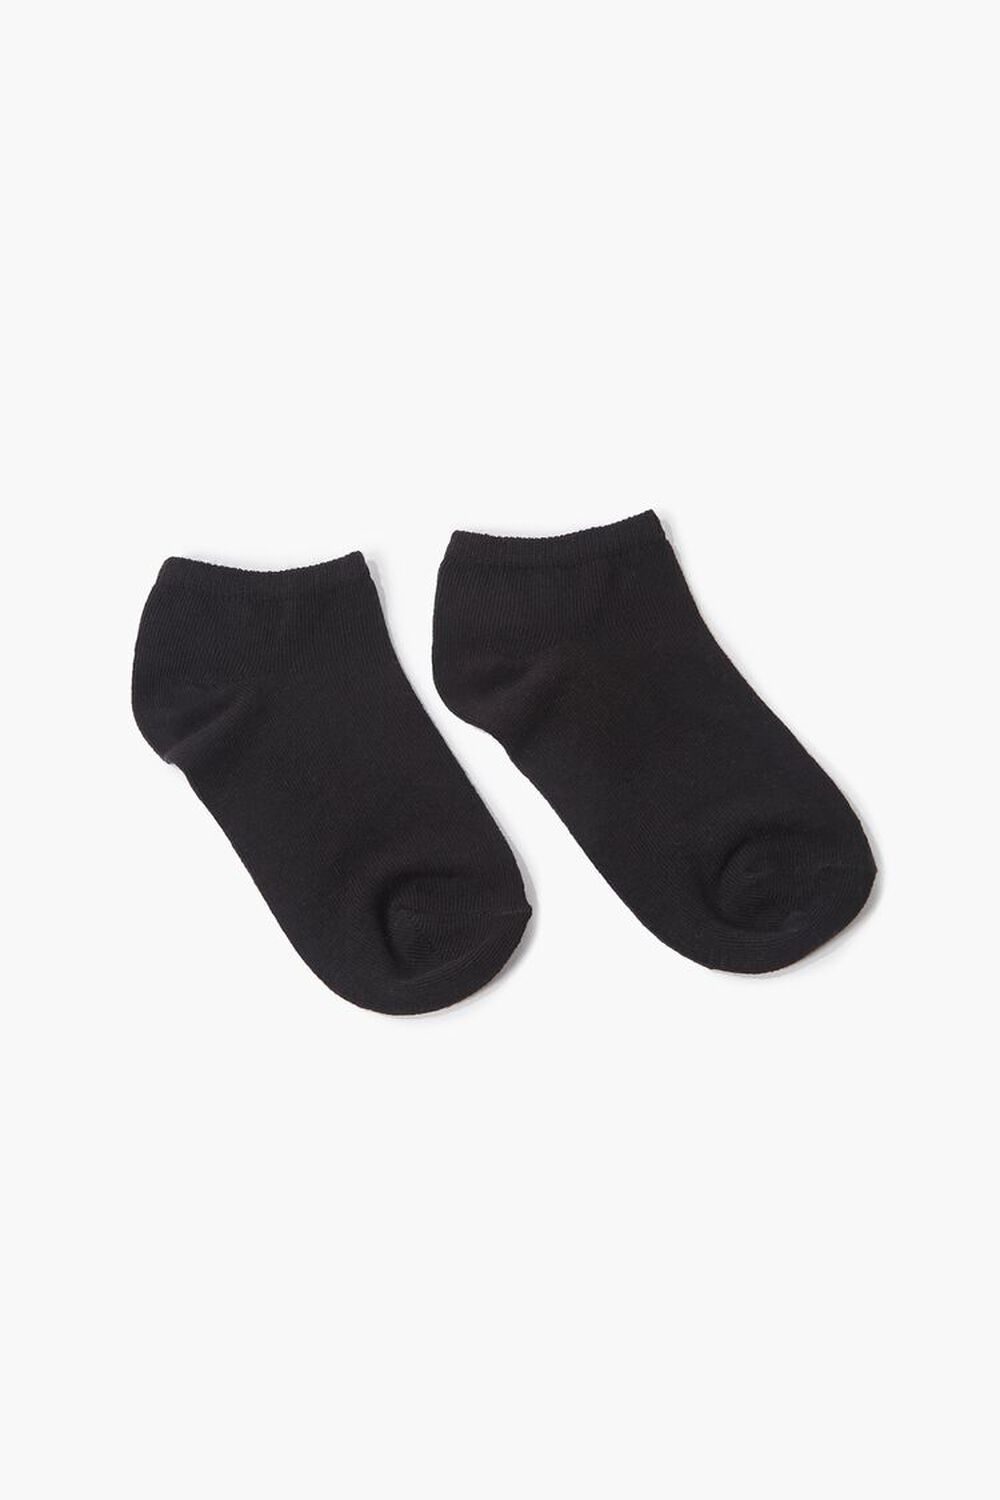 Kids Ankle Sock Set - 5 pack (Girls + Boys)